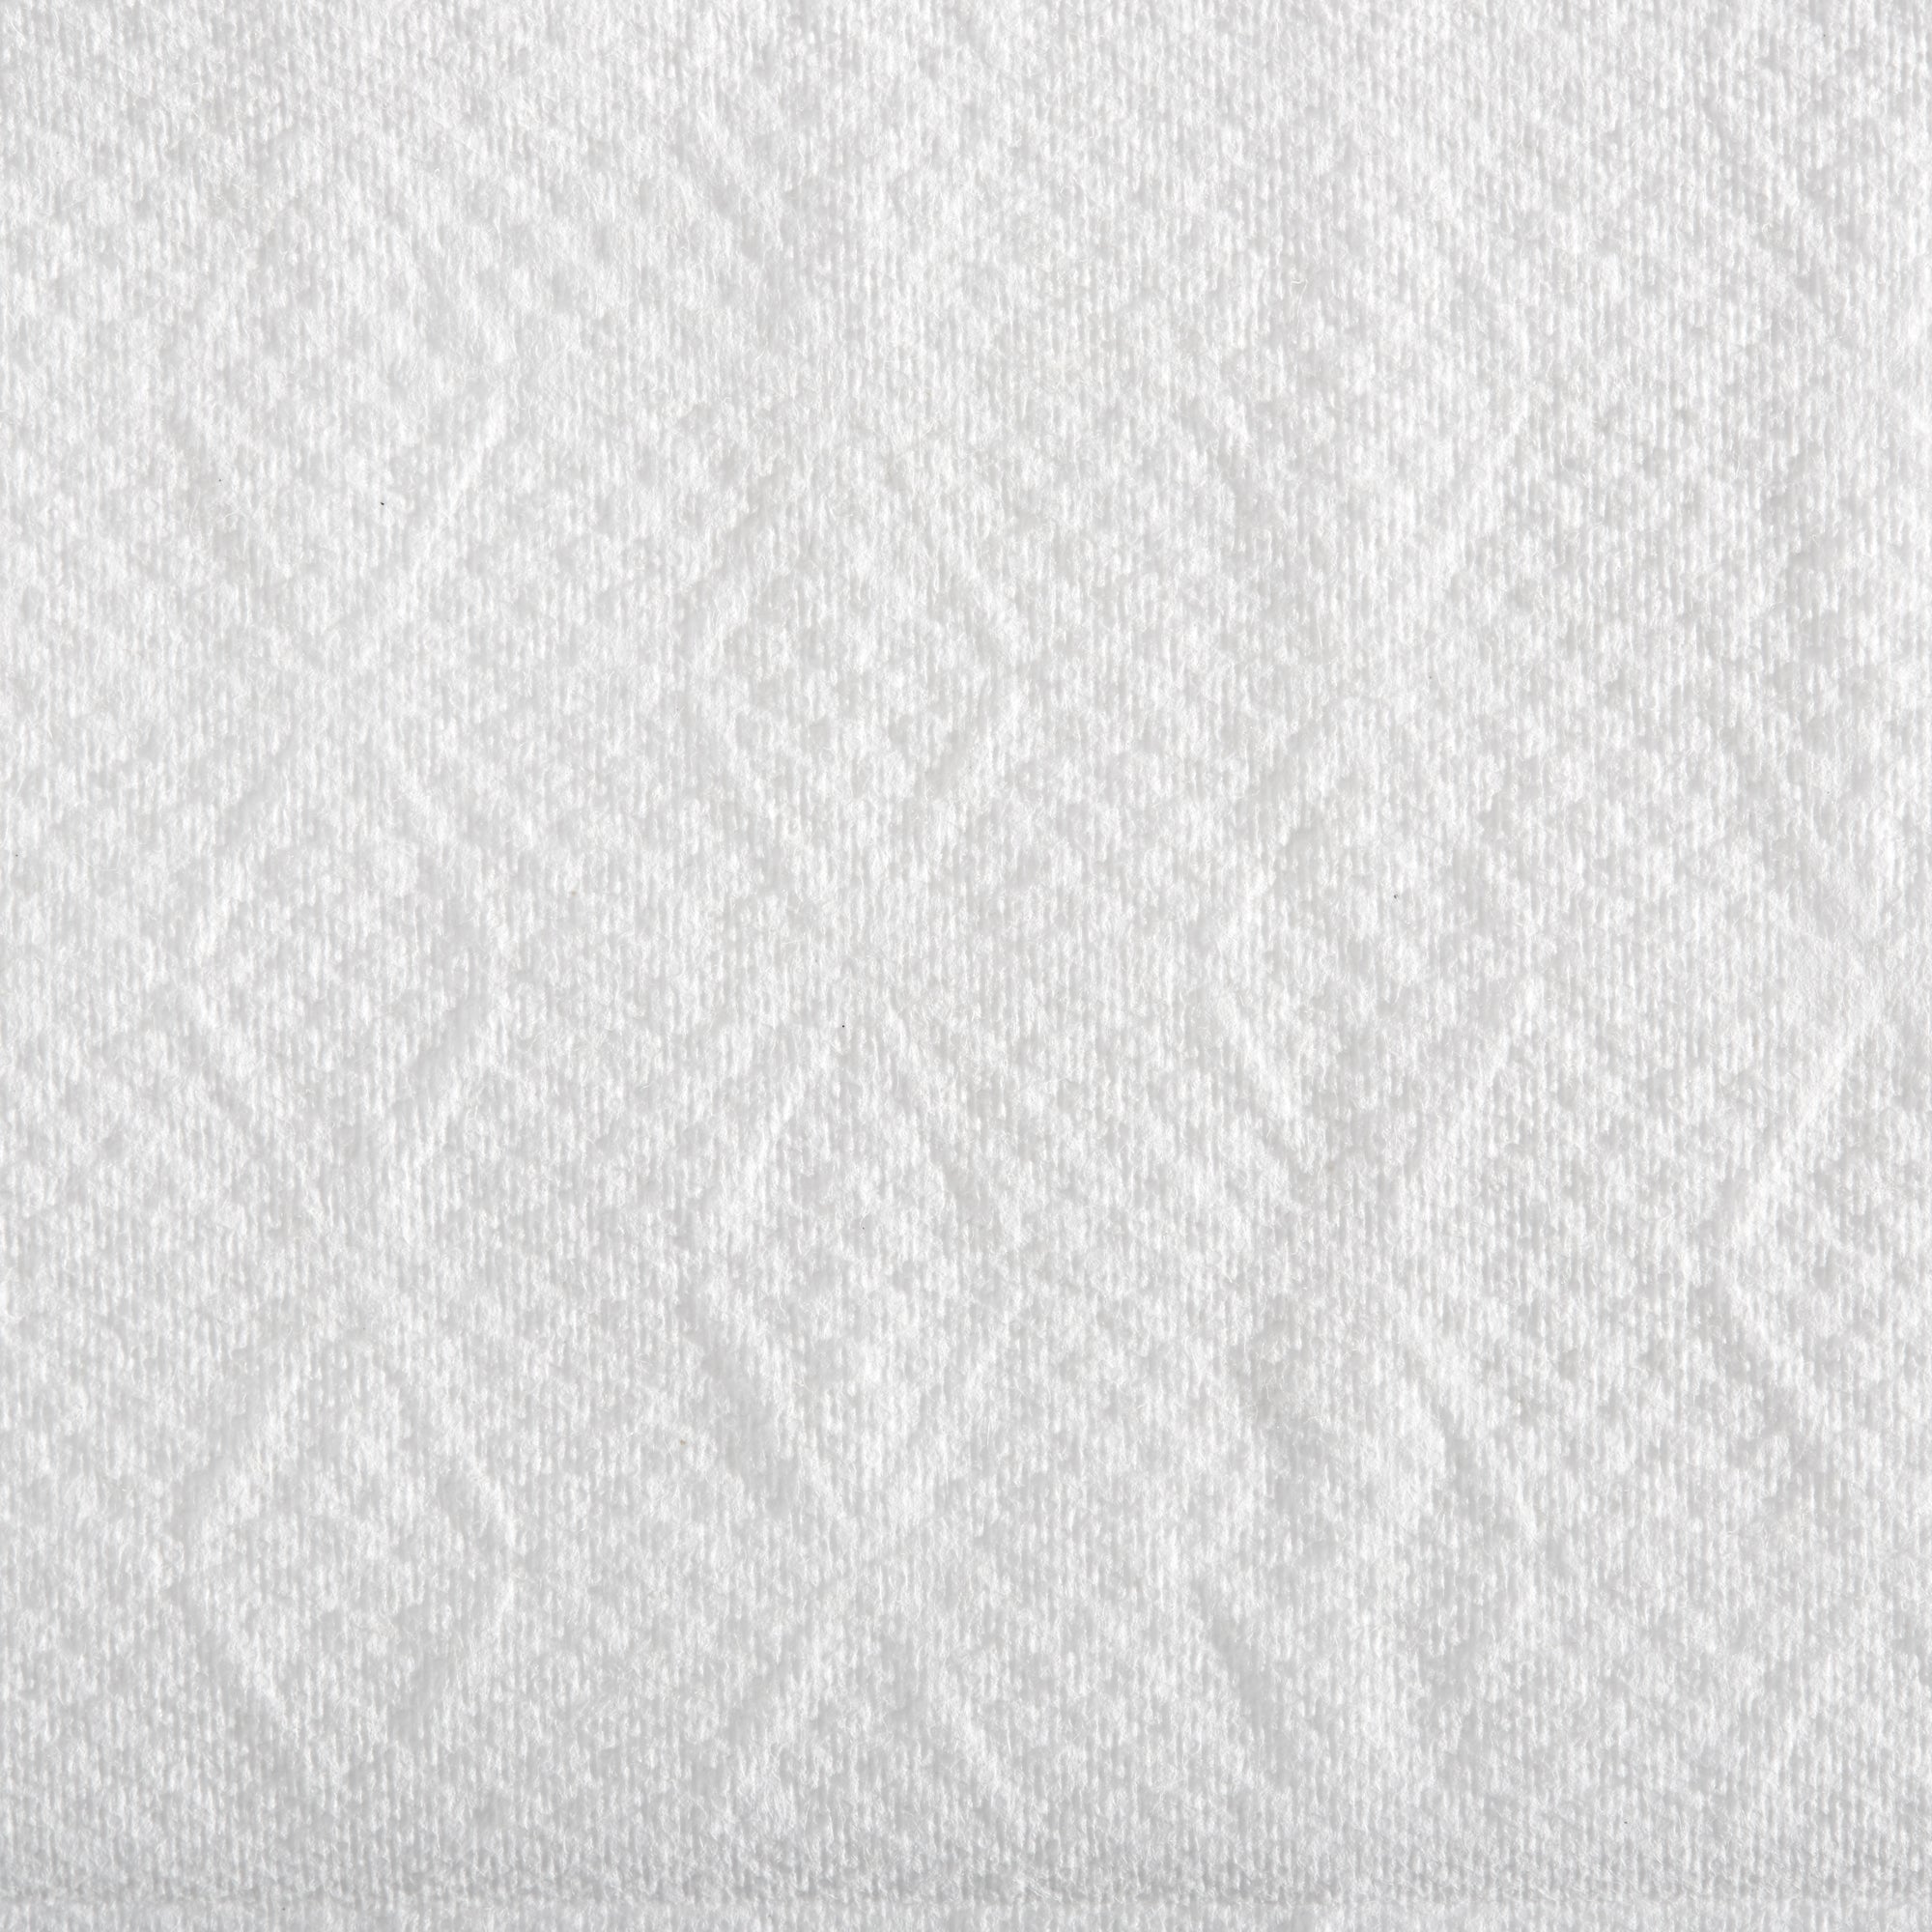 מגבות נייר ממוחזרות פרימיום Pacific Blue Ultra™ BIGFOLD®, לבן, 2,200 מגבות לכל מארז